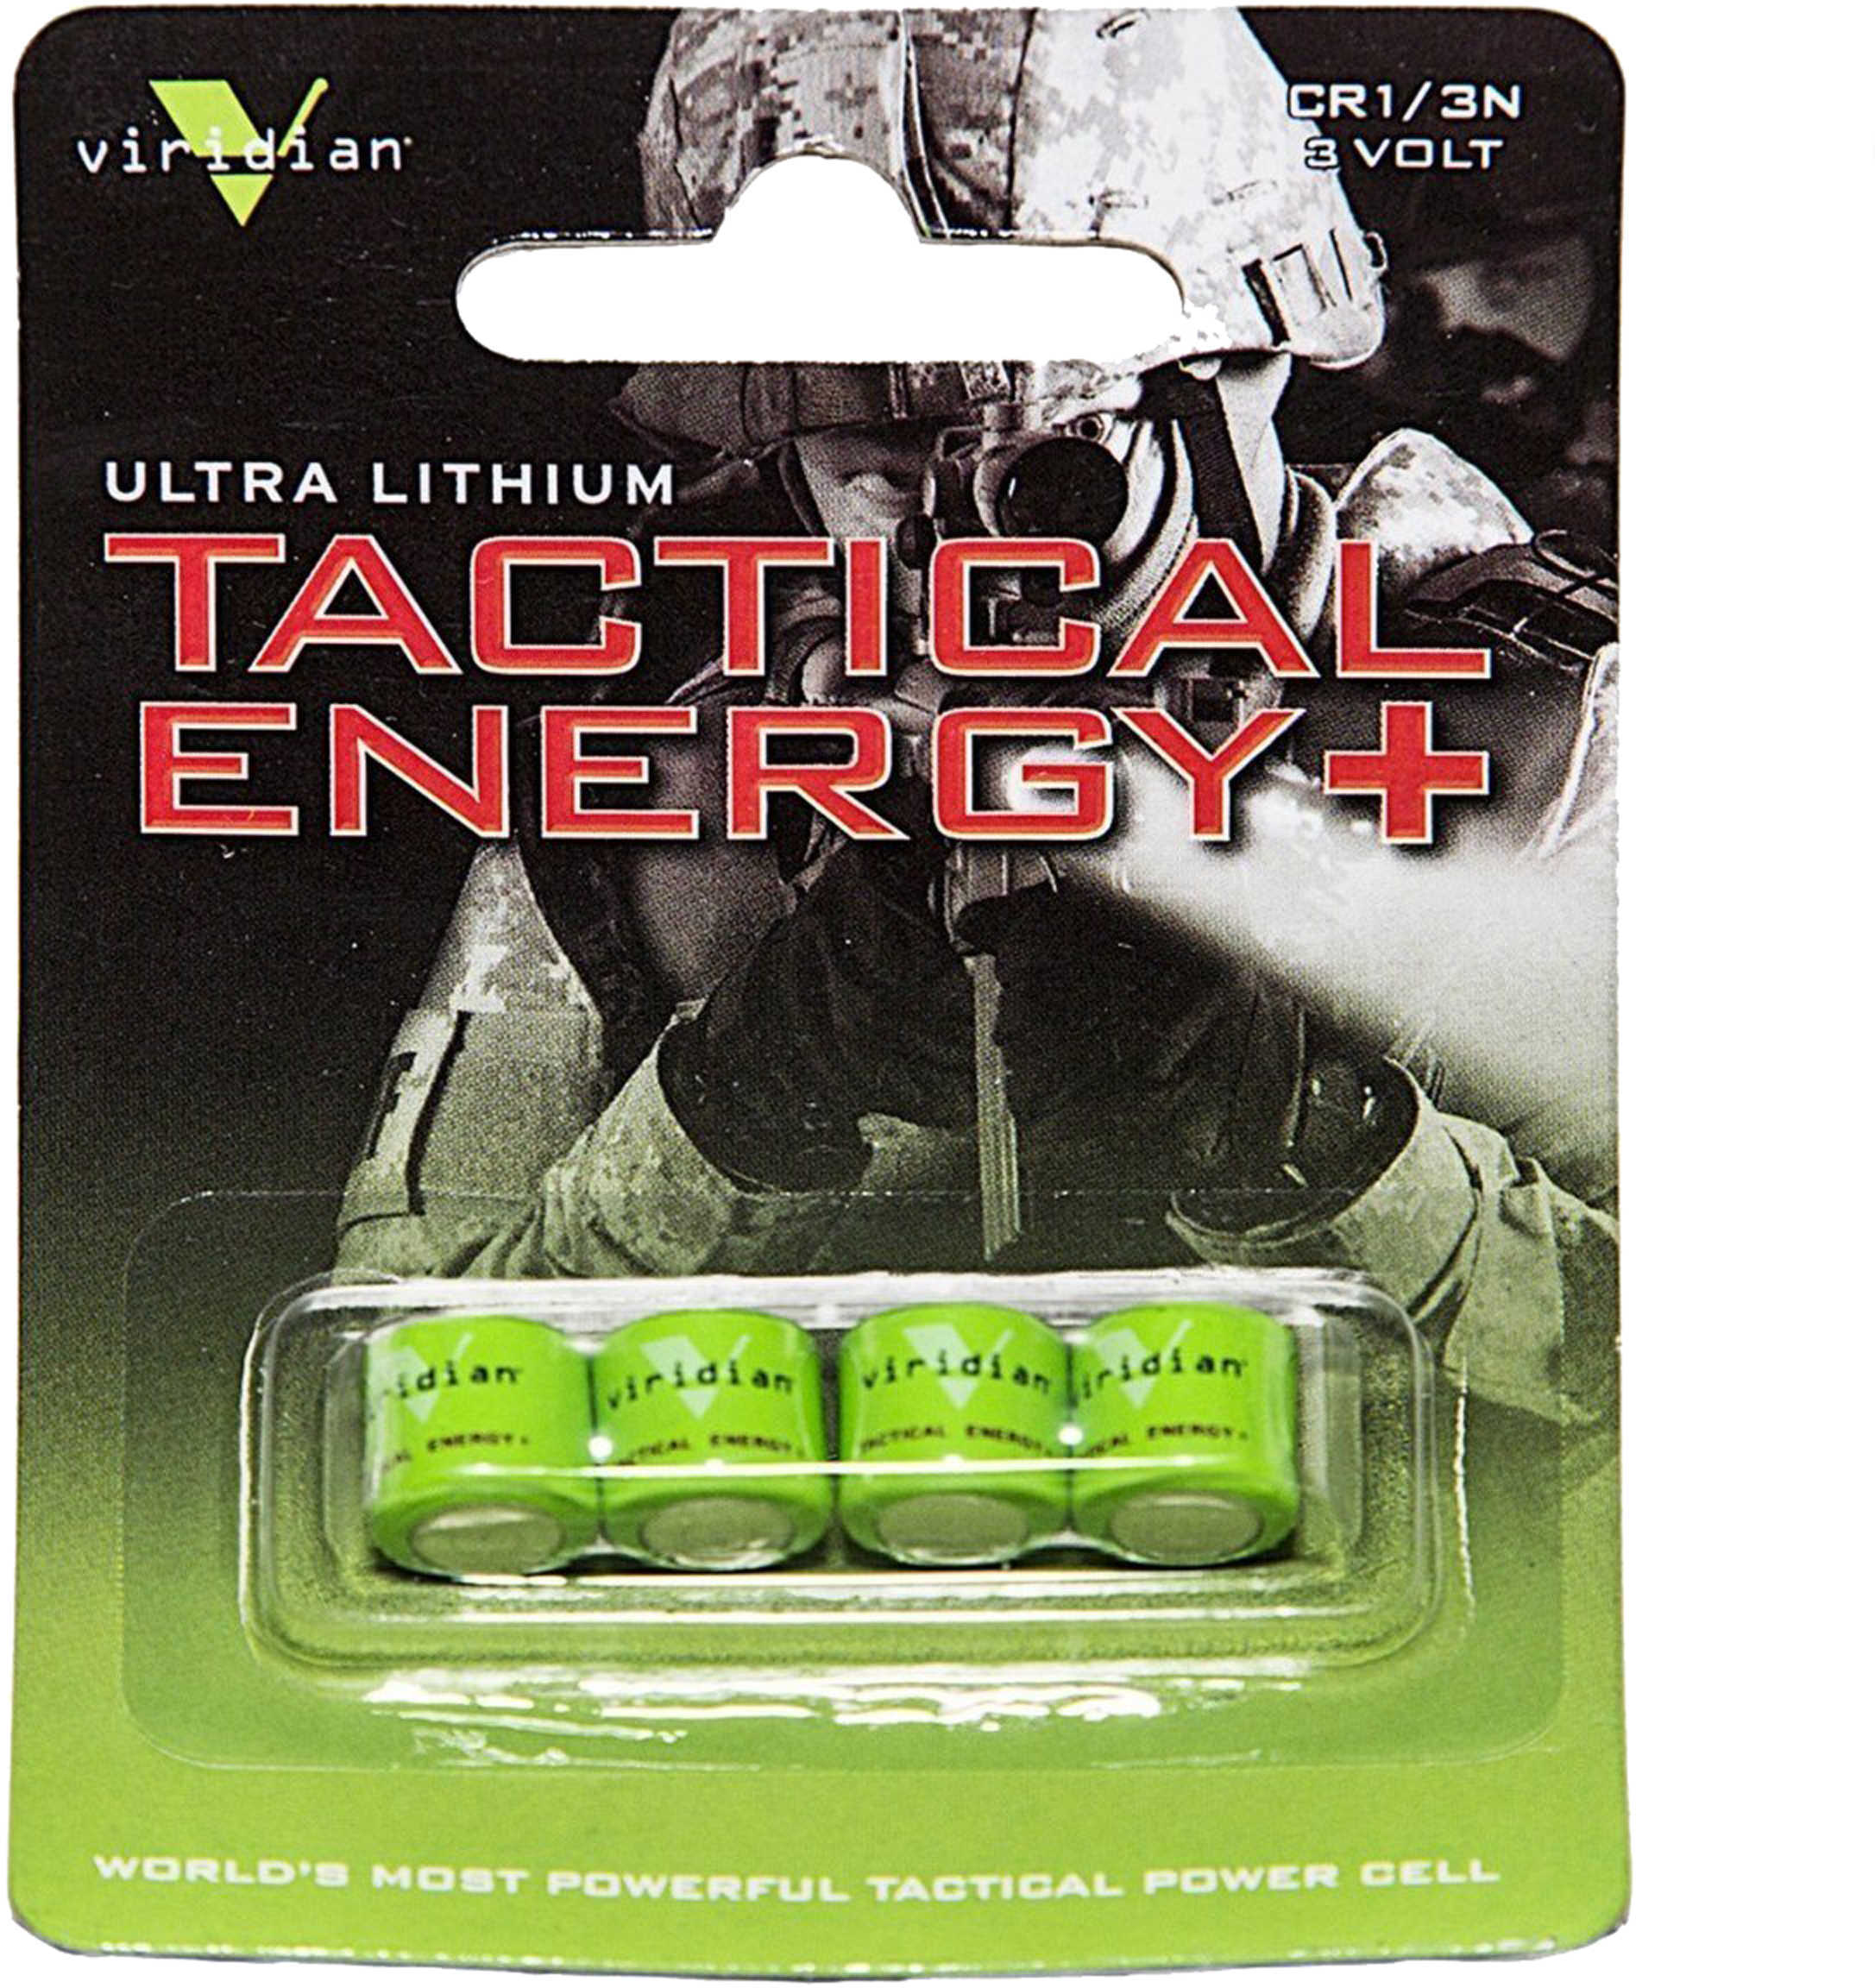 Viridian Weapon Technologies Green Laser Battery 1/3n Lithium 4 Pack Vir-13n-4